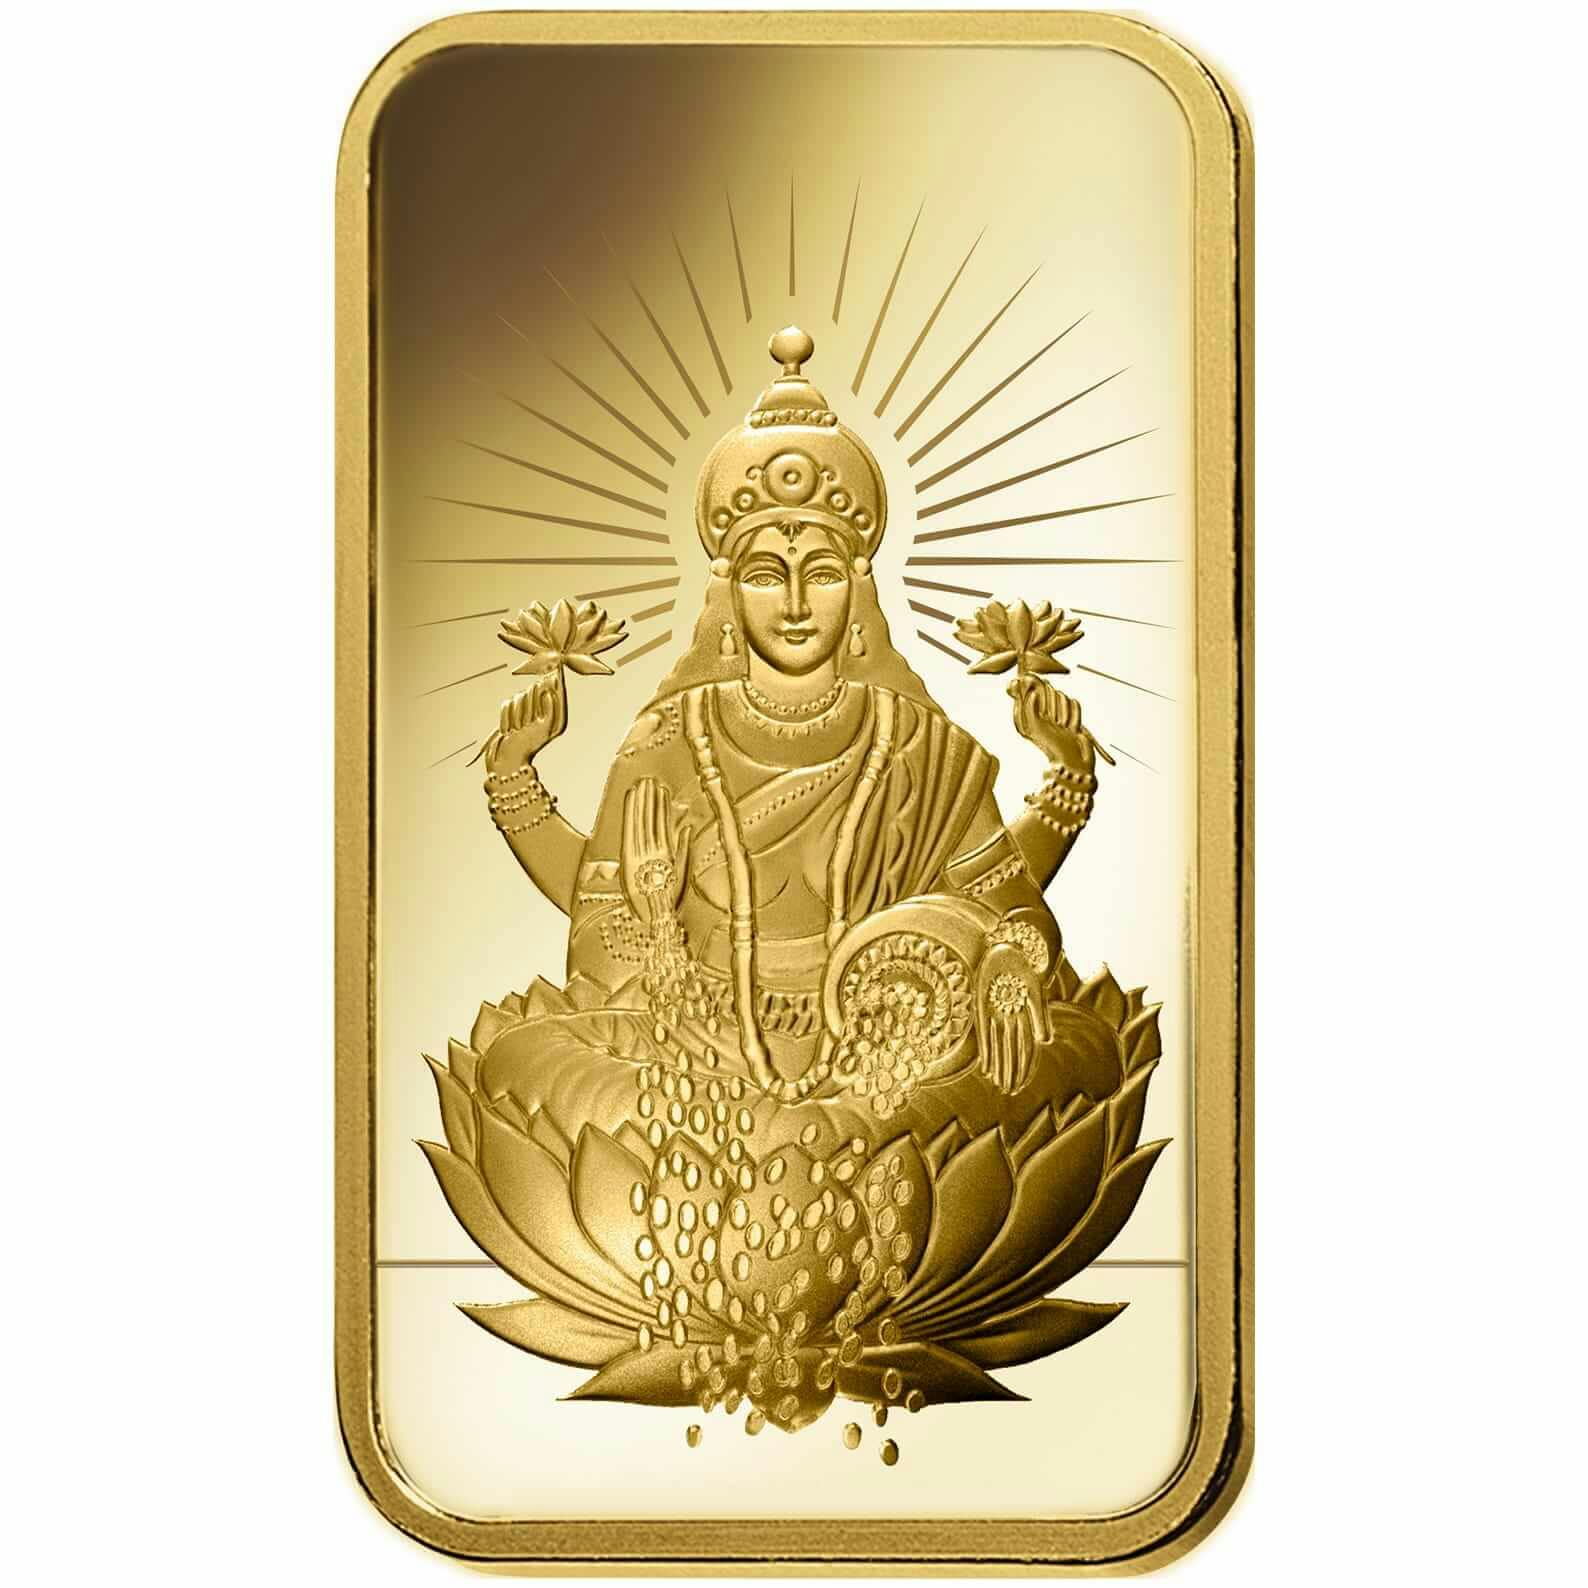 Compare oro, 10 grammi d'oro puro Lakshmi - PAMP Svizzera - Front